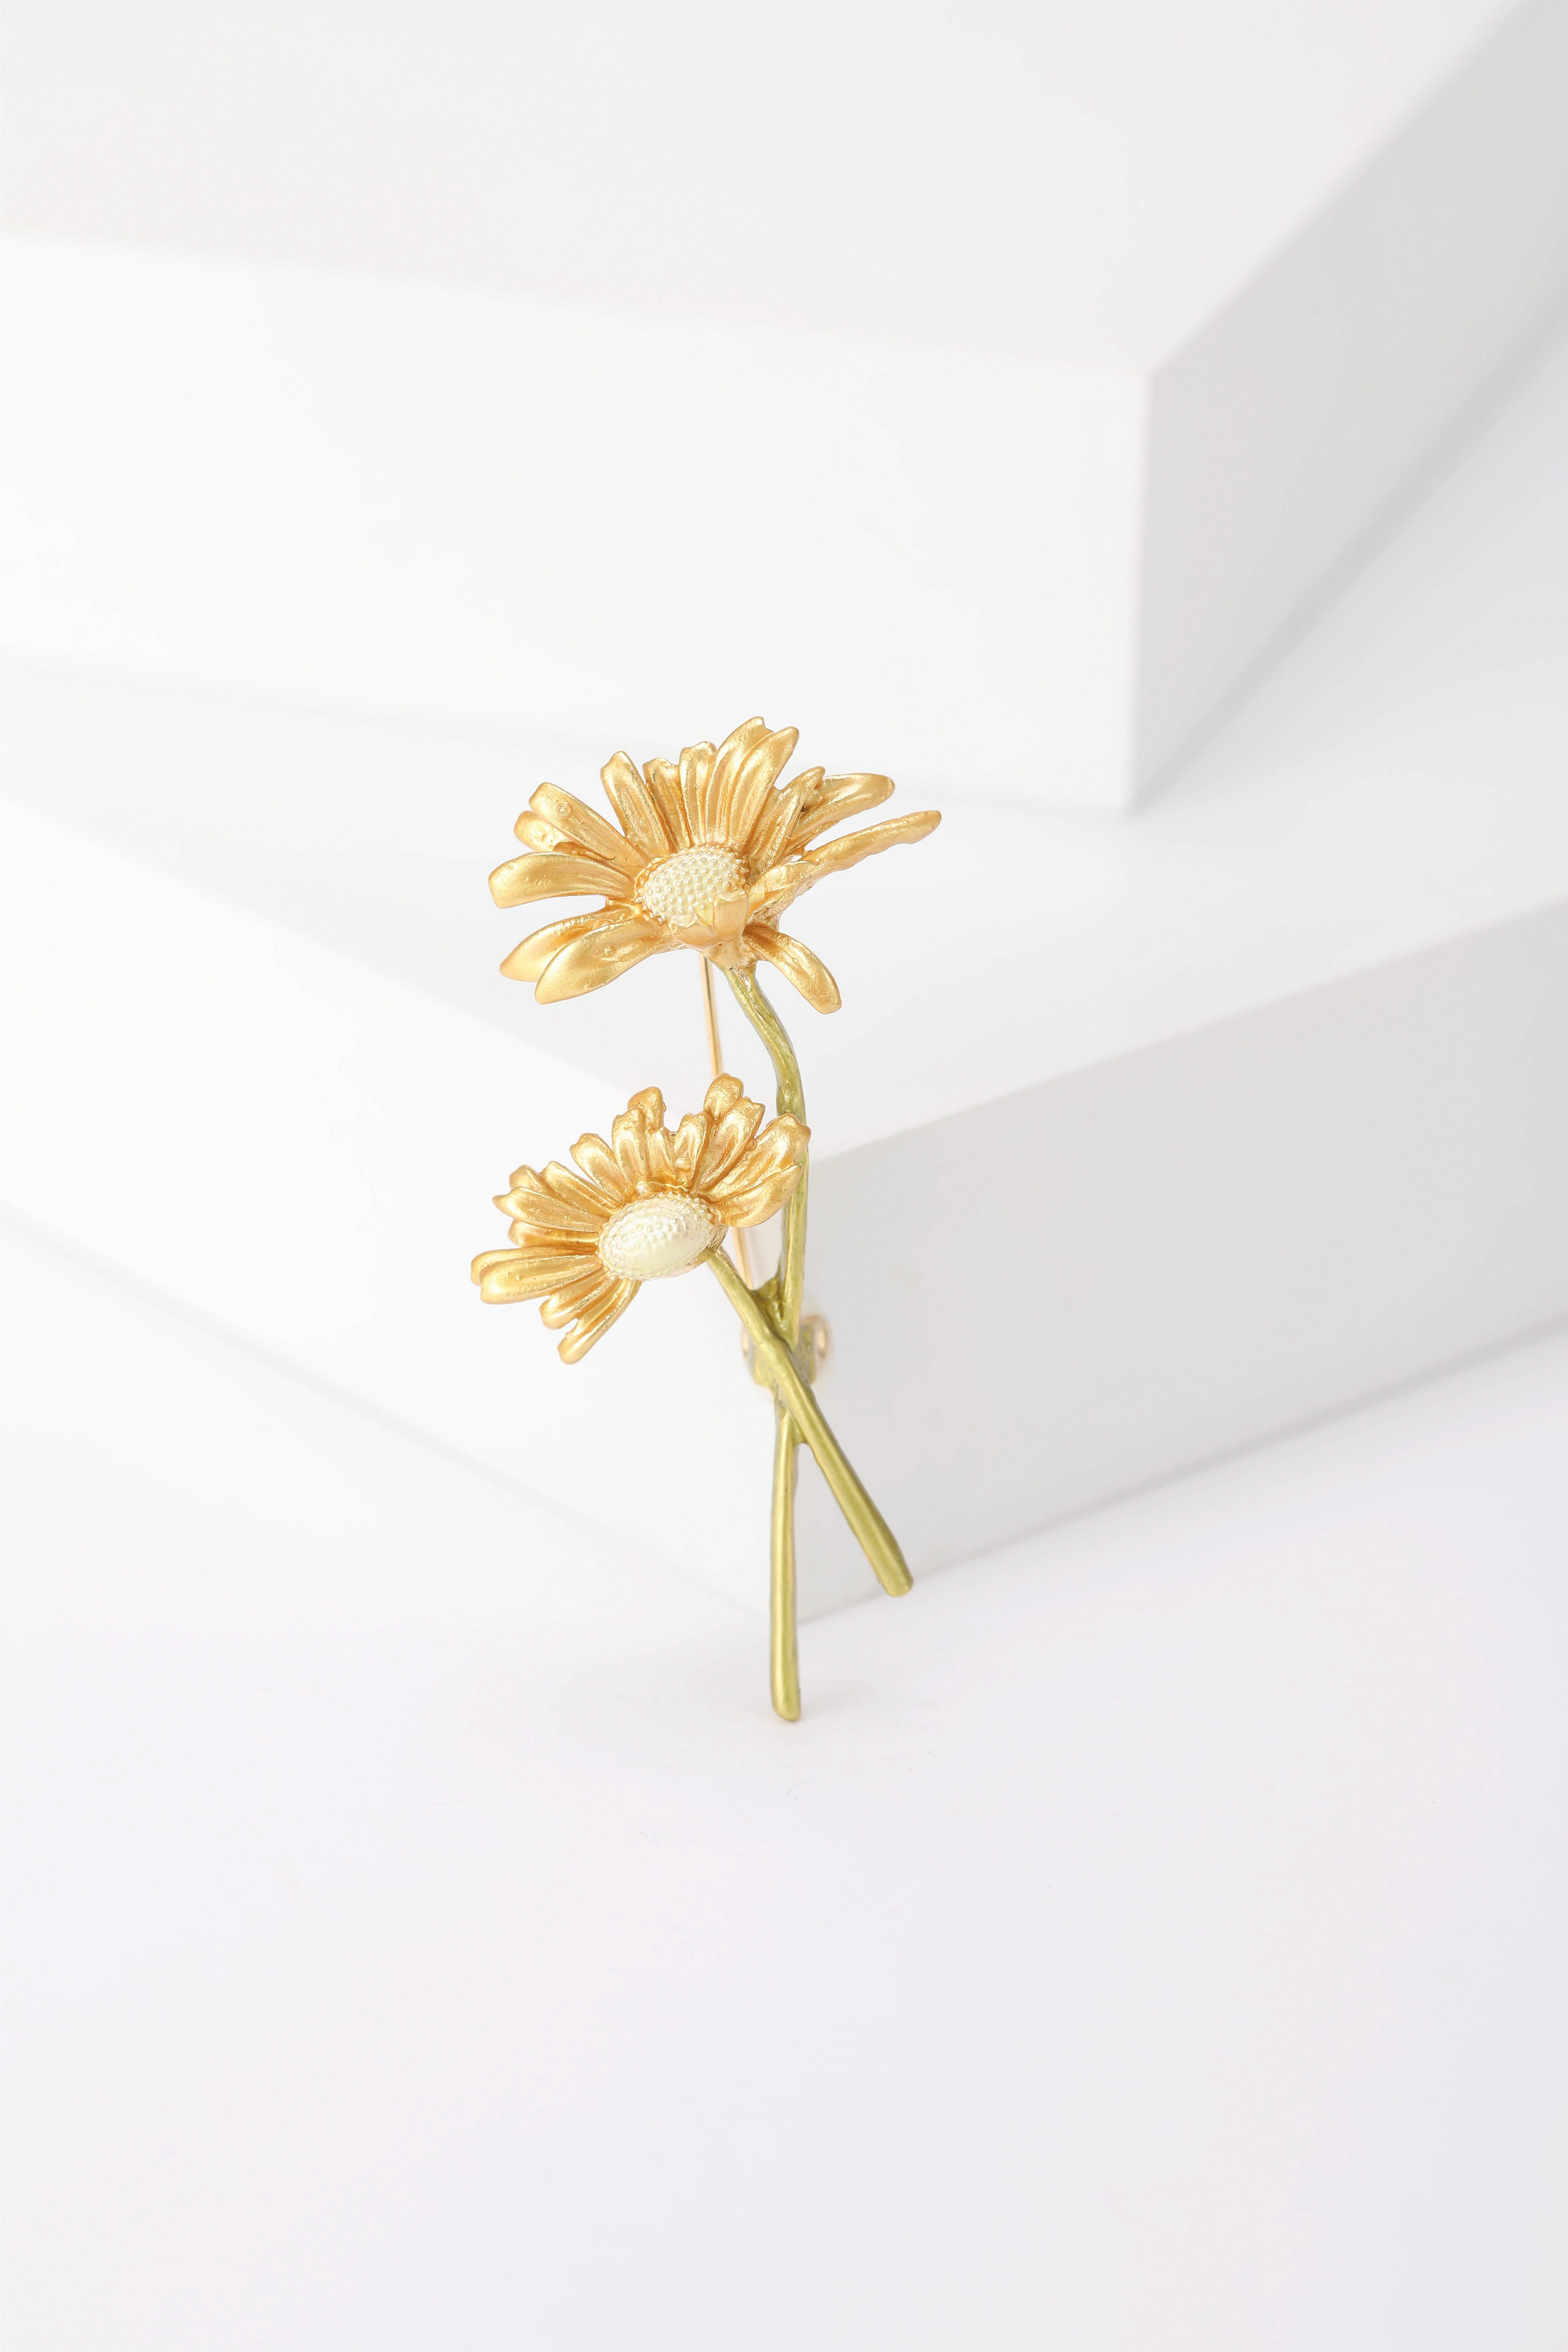 MayTree Brosche "Margaritenblüte", gold (Stück, 1-tlg), Metallbrosche in Form zwei goldenen Margaritenblüten